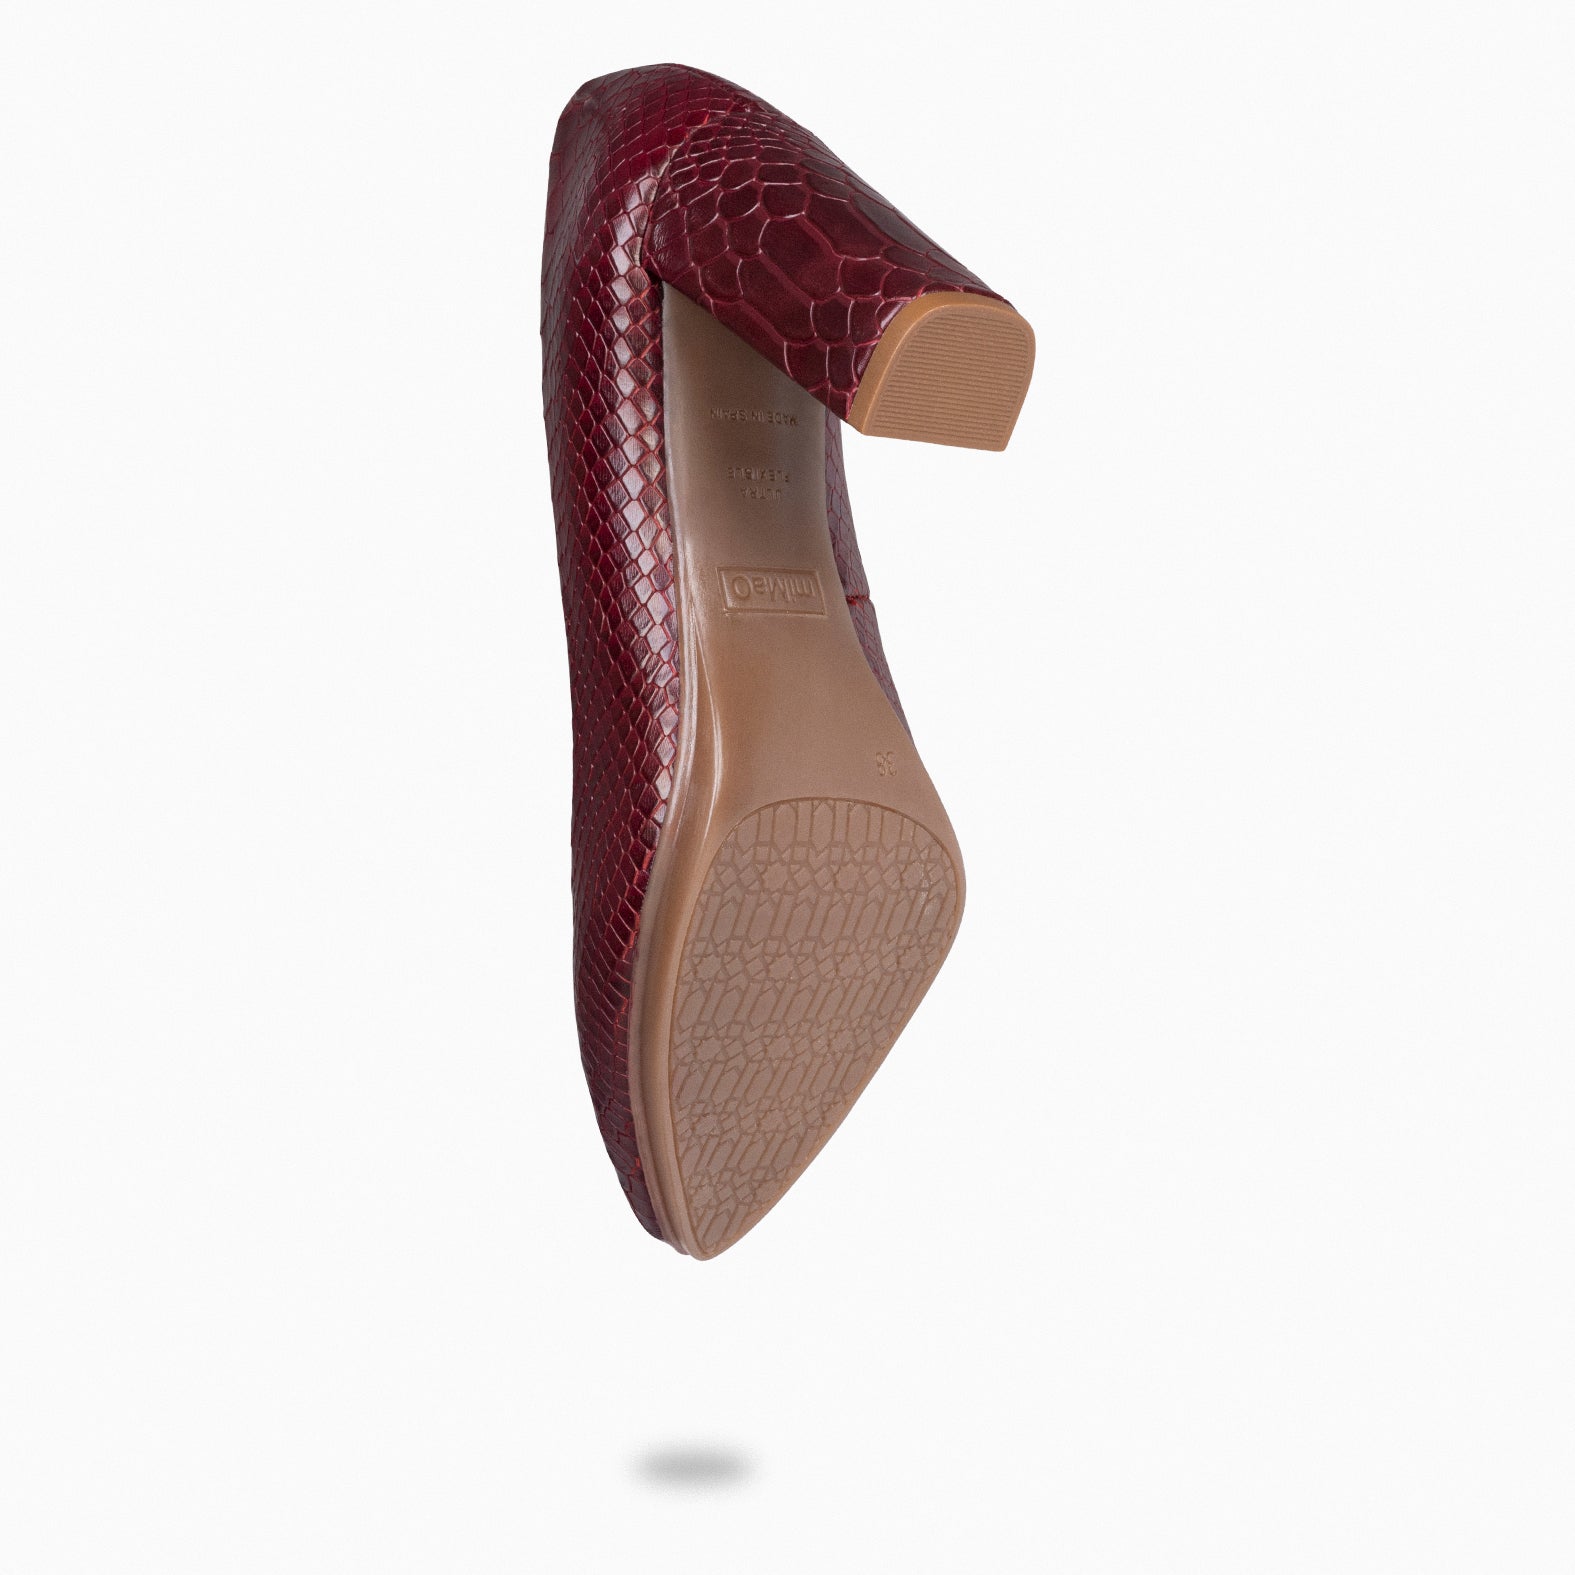 URBAN SAUVAGE - Zapatos de salón con textura de serpiente BURDEOS